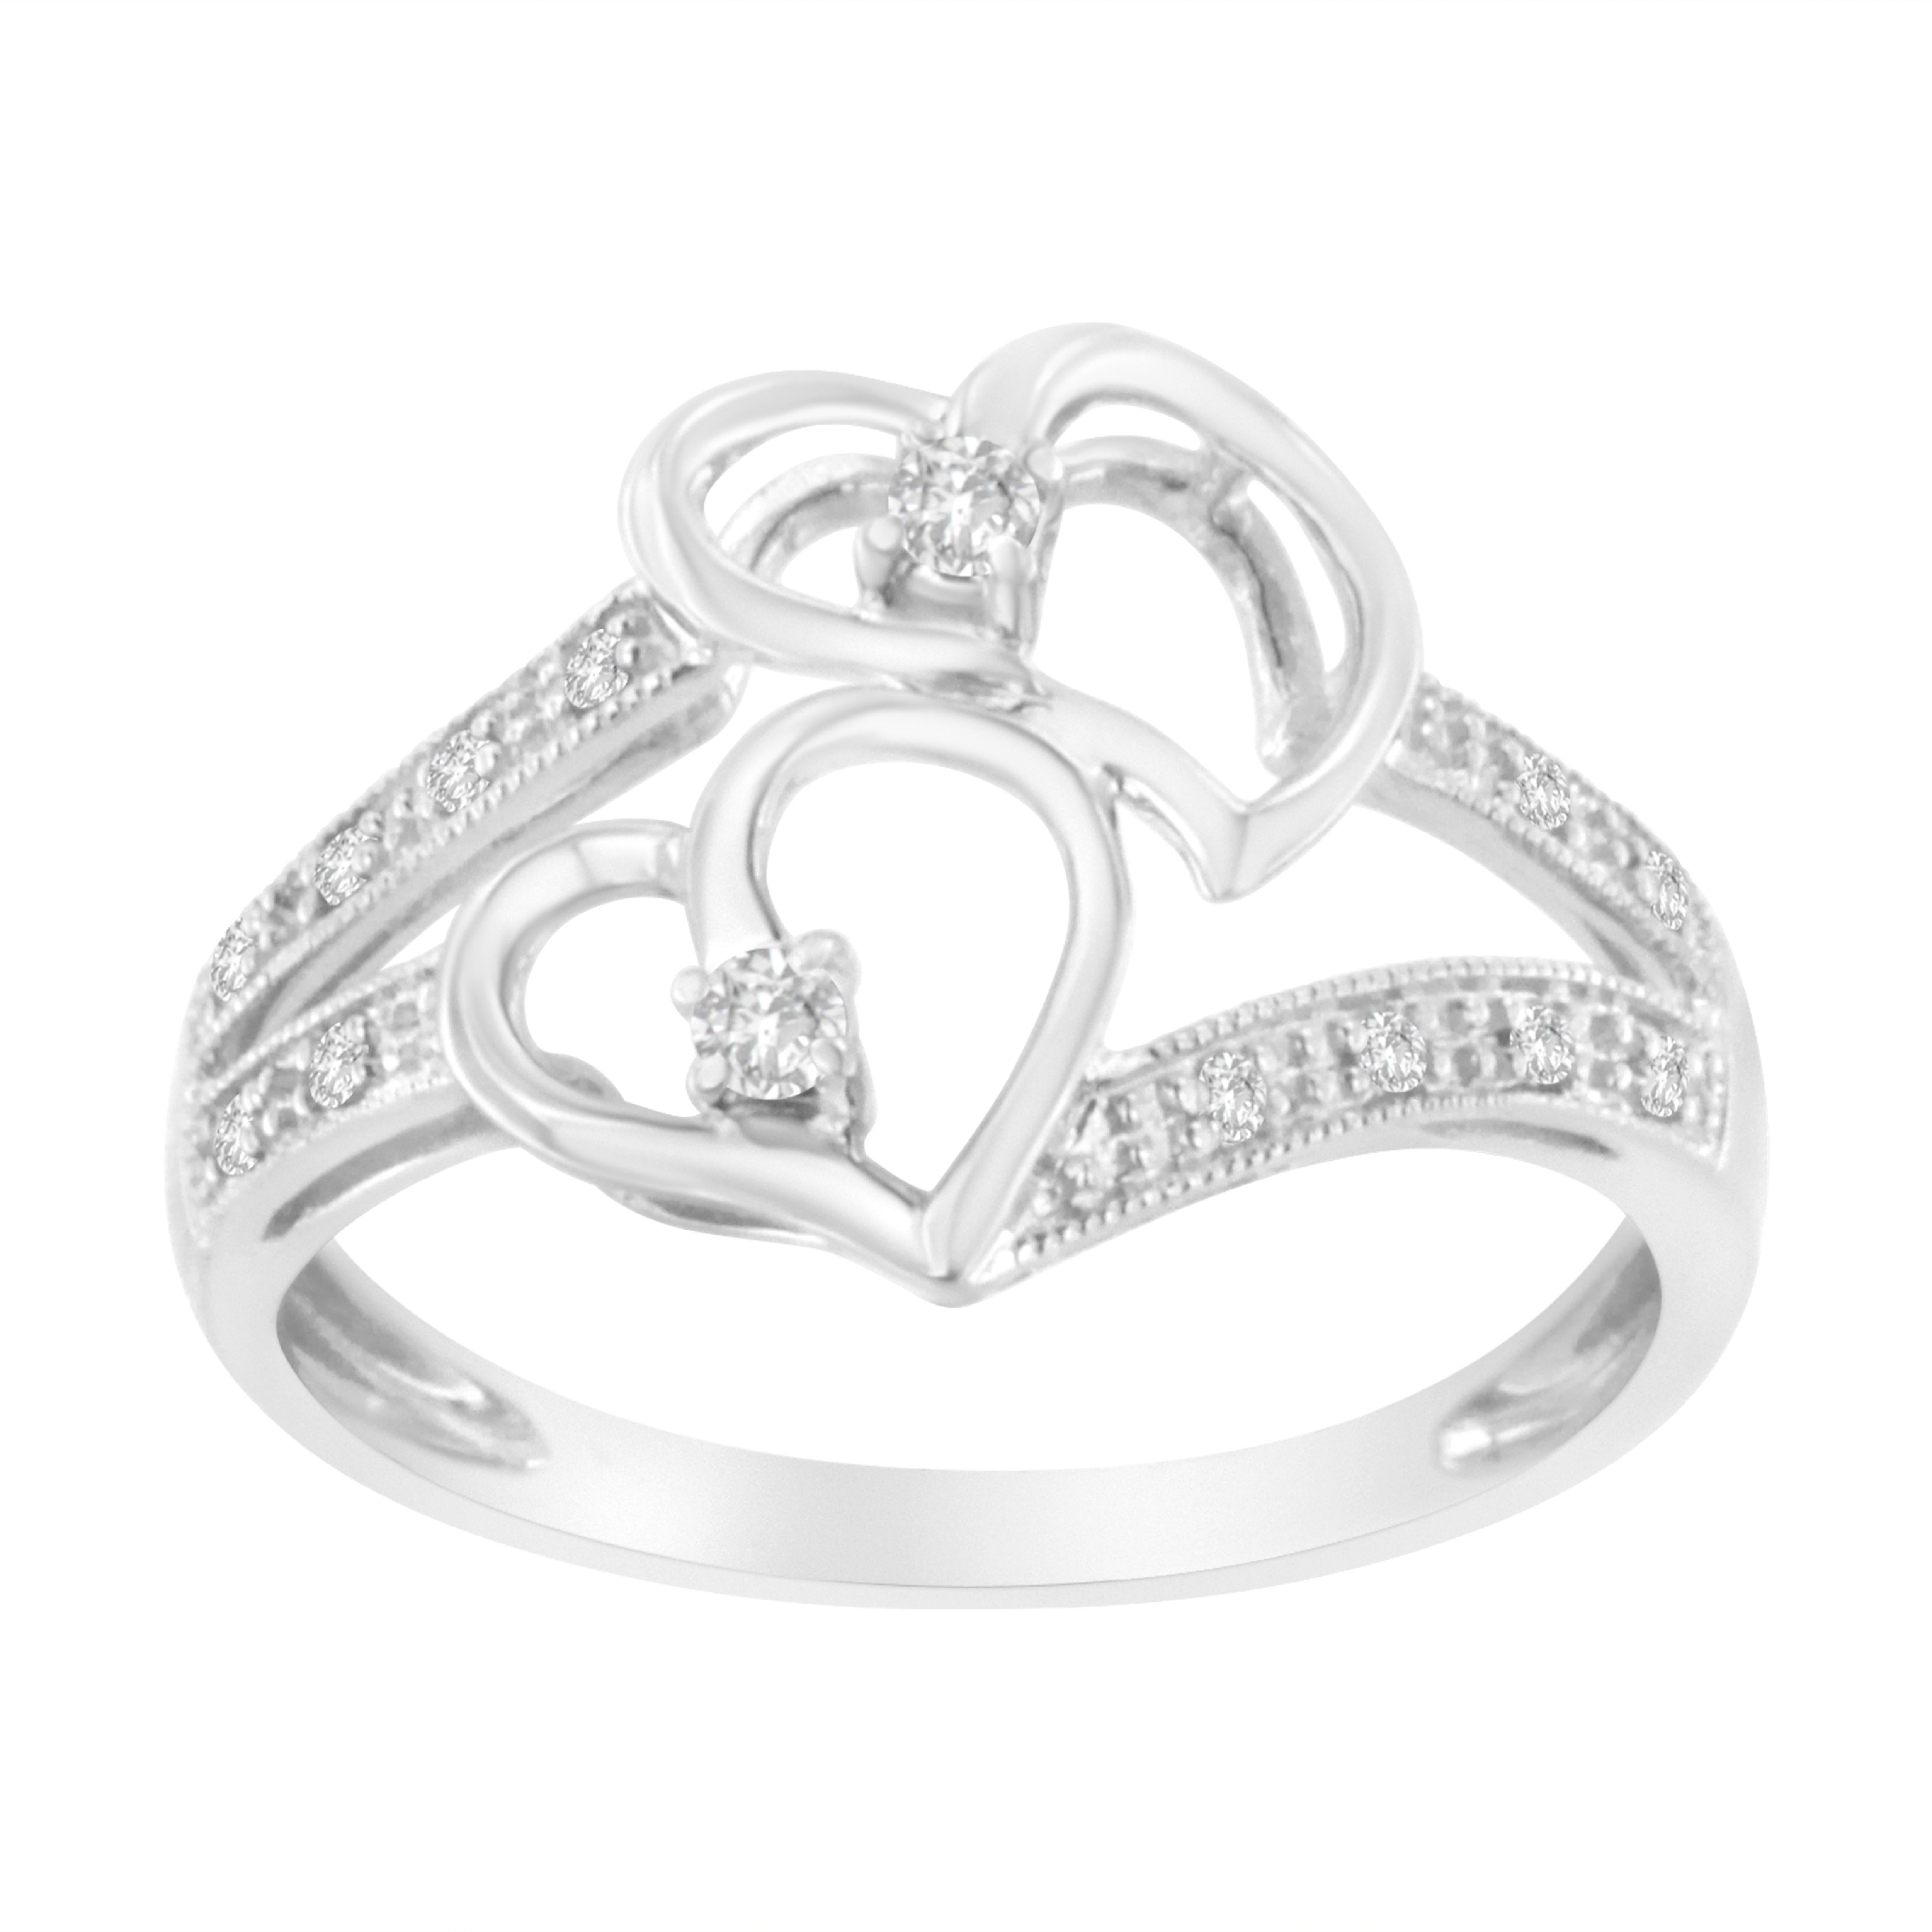 Feiern Sie Ihre magischen Liebesmomente mit diesem prächtigen Doppelherz-Diamantring mit Maserung. Dieser bezaubernde Ring zeigt zwei offene Herzen, die mit 2 wunderschönen Diamanten im Rundschliff geschmückt sind, und der Schaft ist mit 12